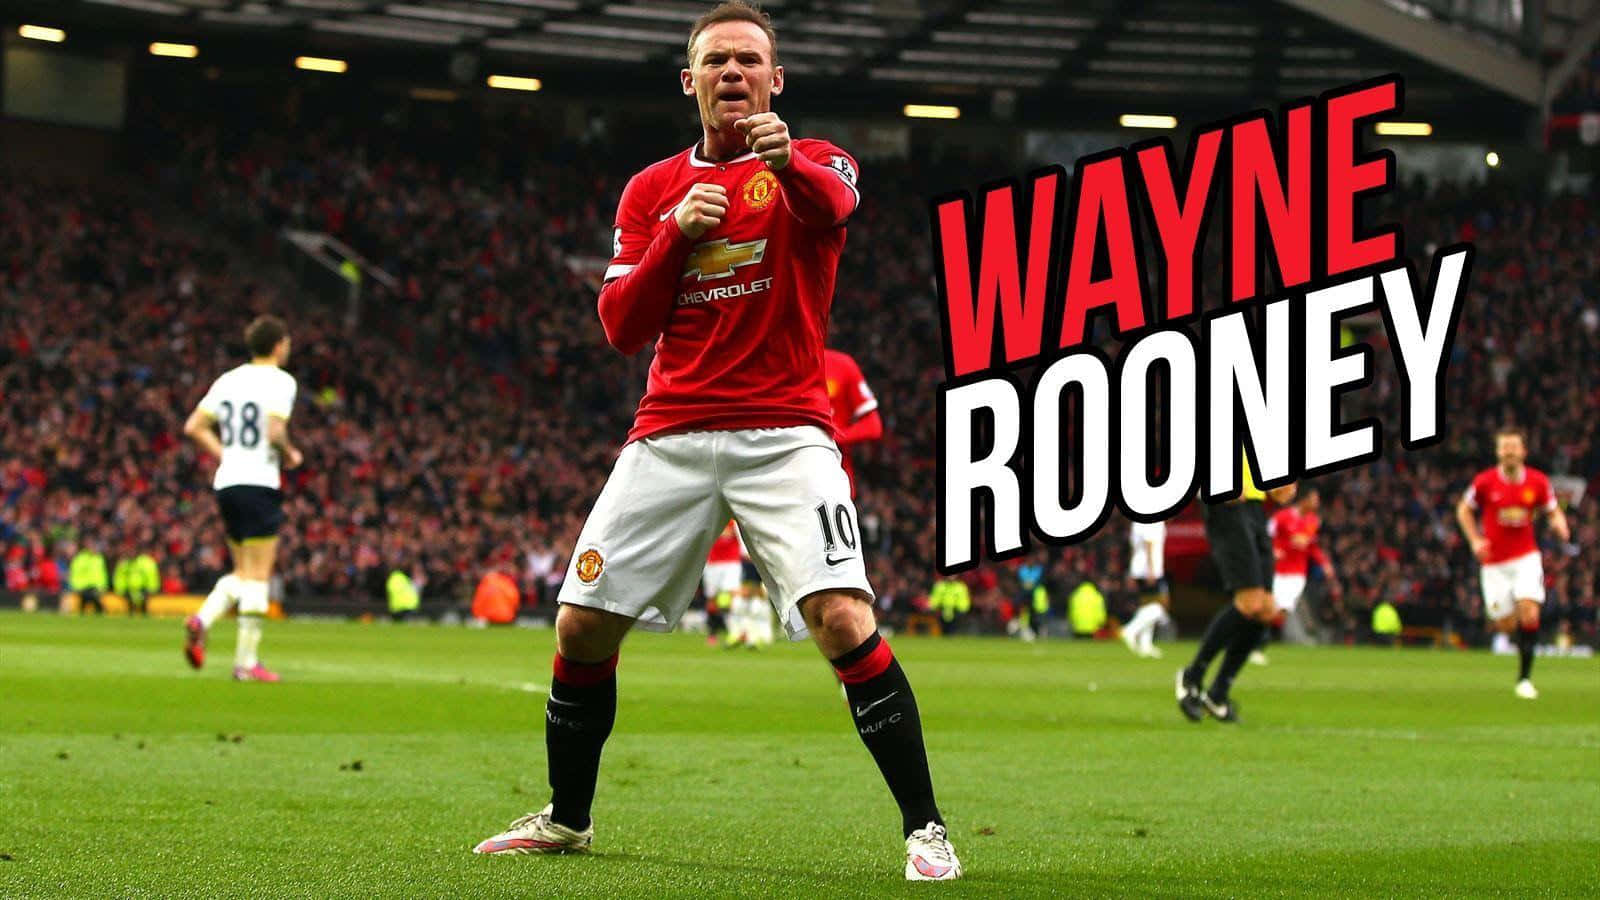 Imagende Wayne Rooney En El Estadio